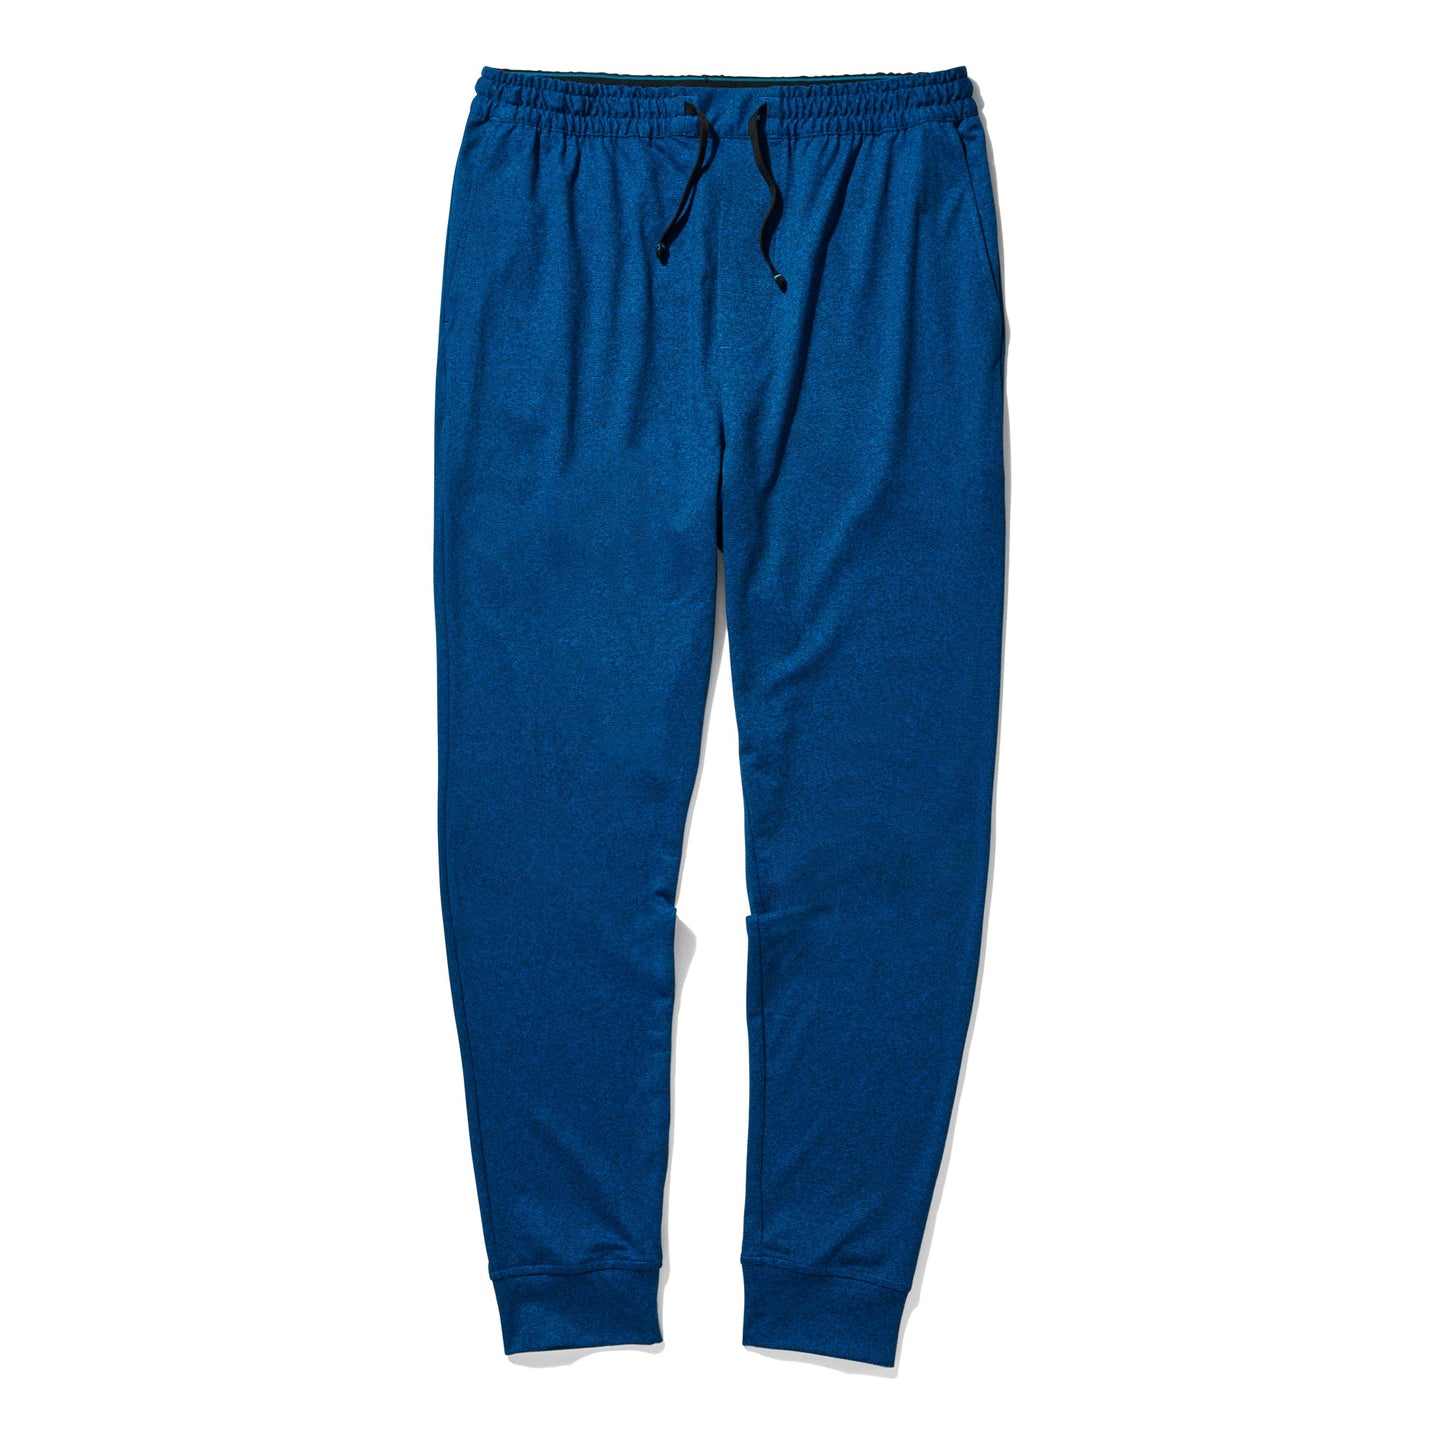 Pantalon de jogging bleu Primer de Stance